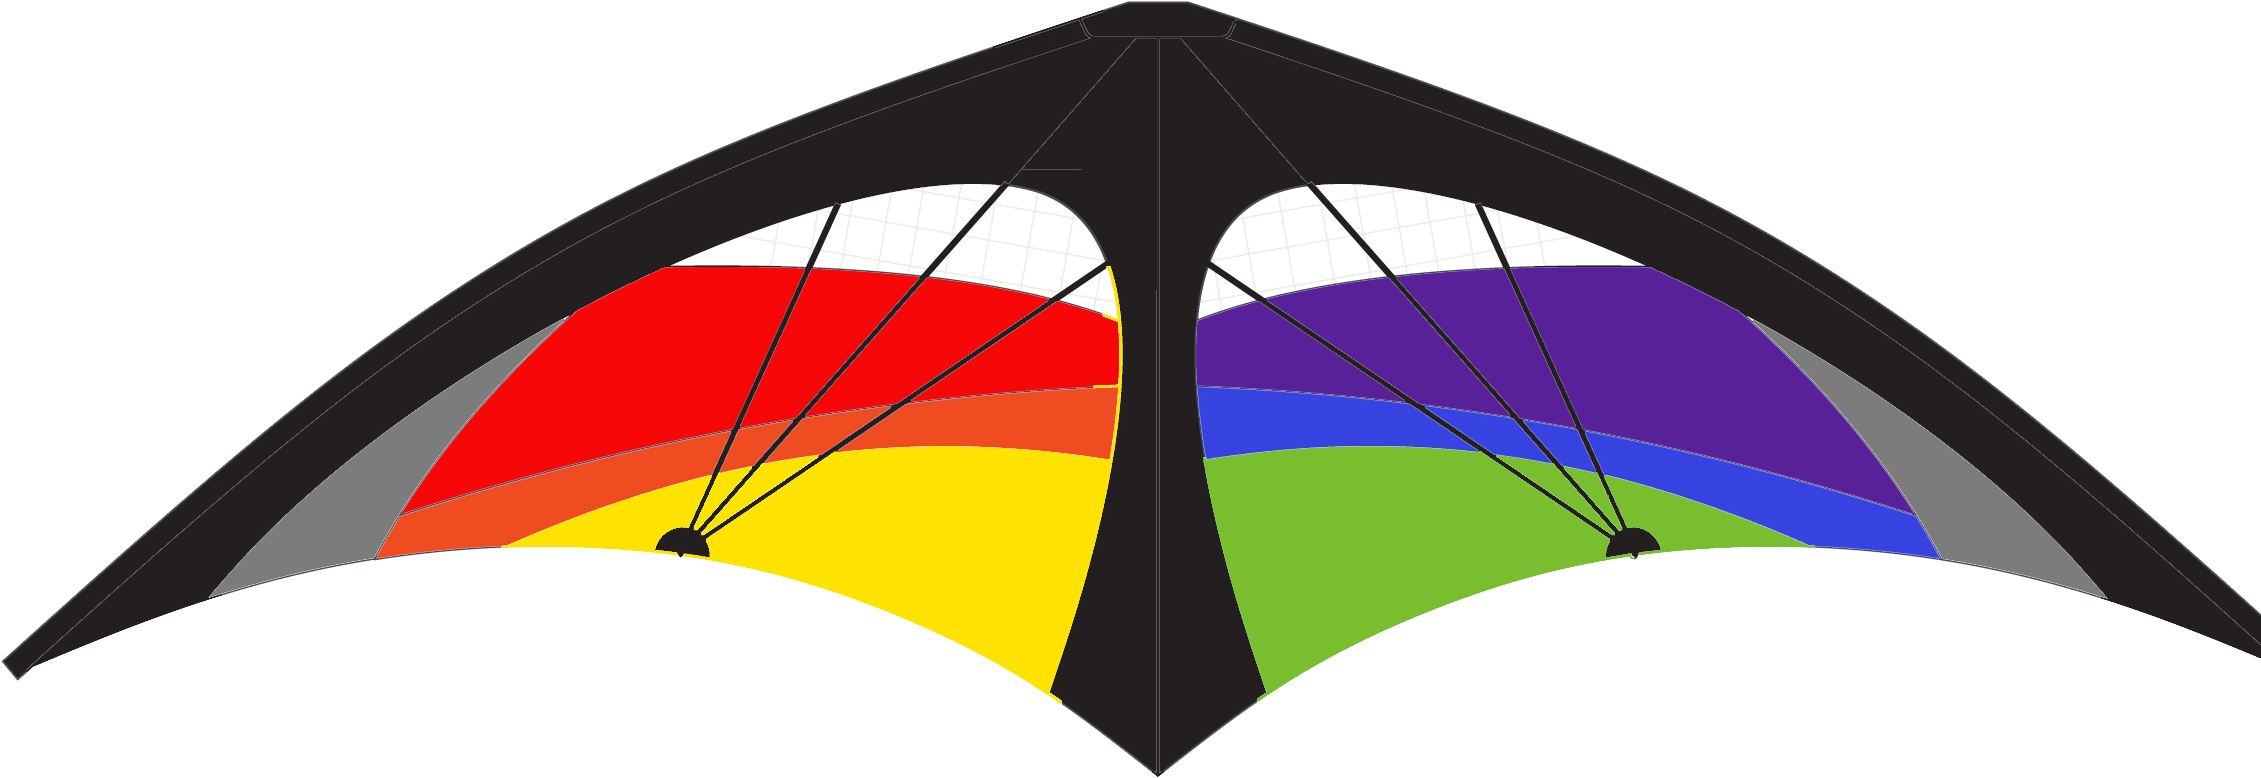 Kl Phantom Stunt Kite - Kite (2360x1128)